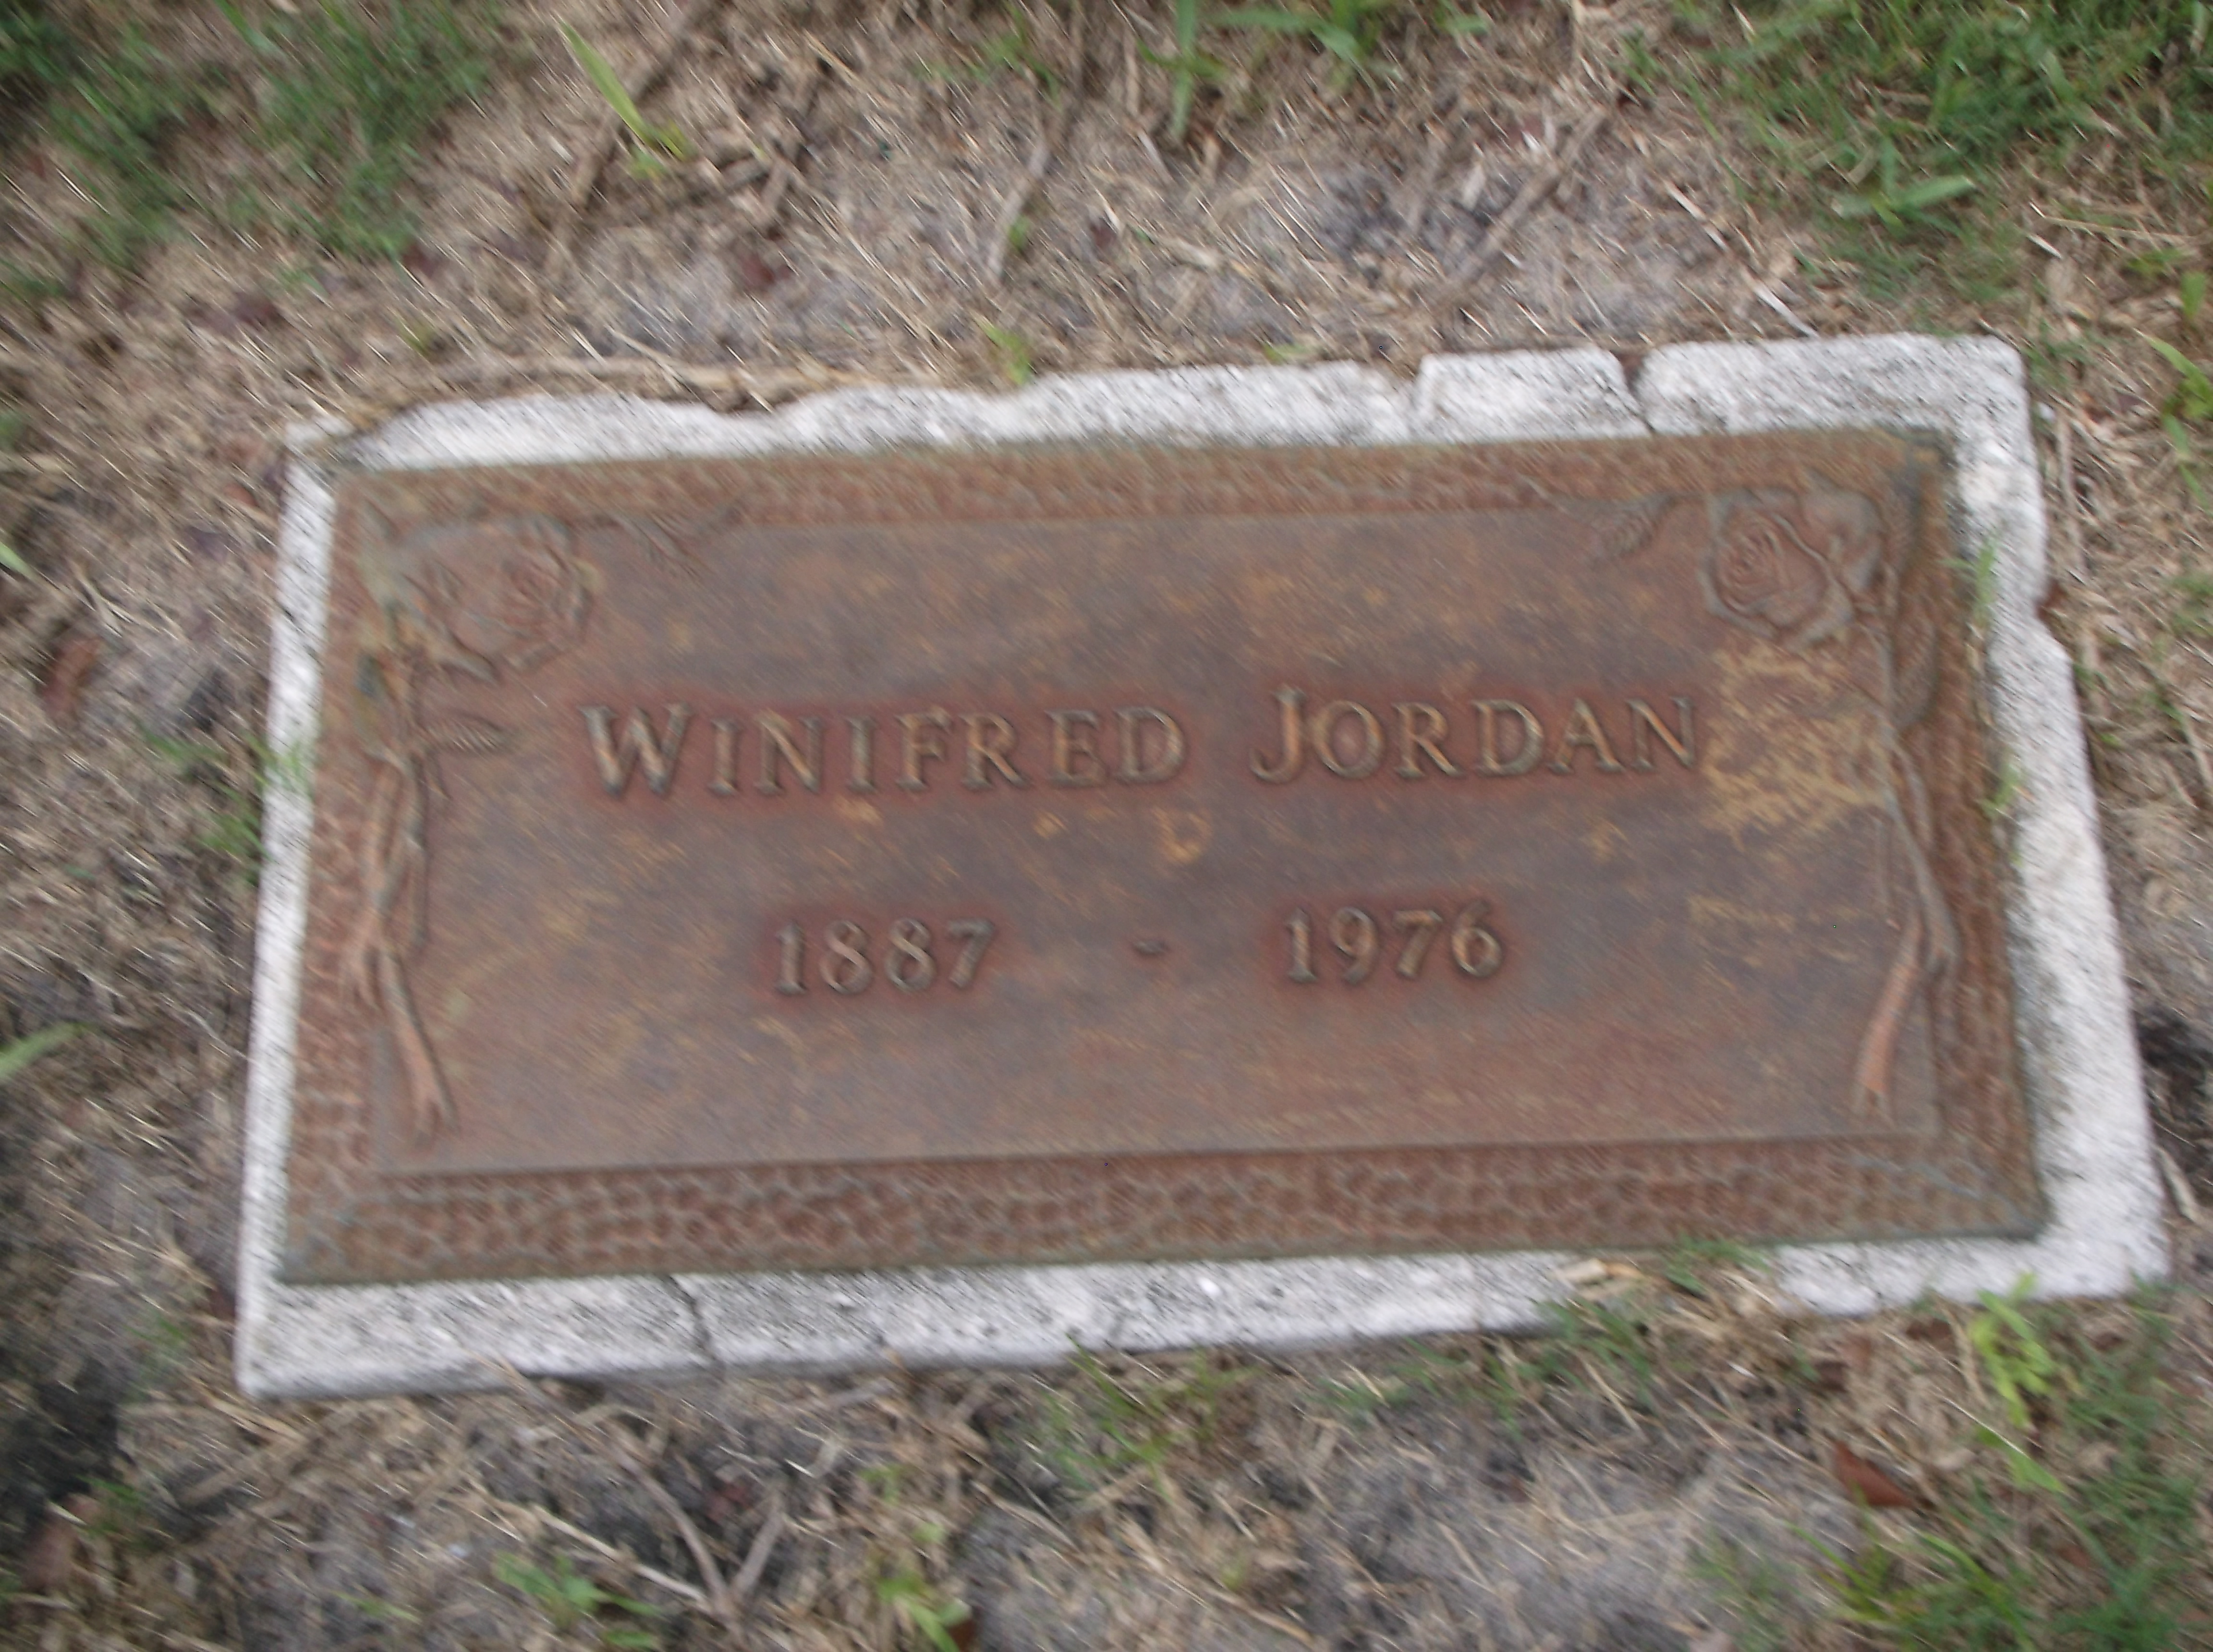 Winifred Jordan